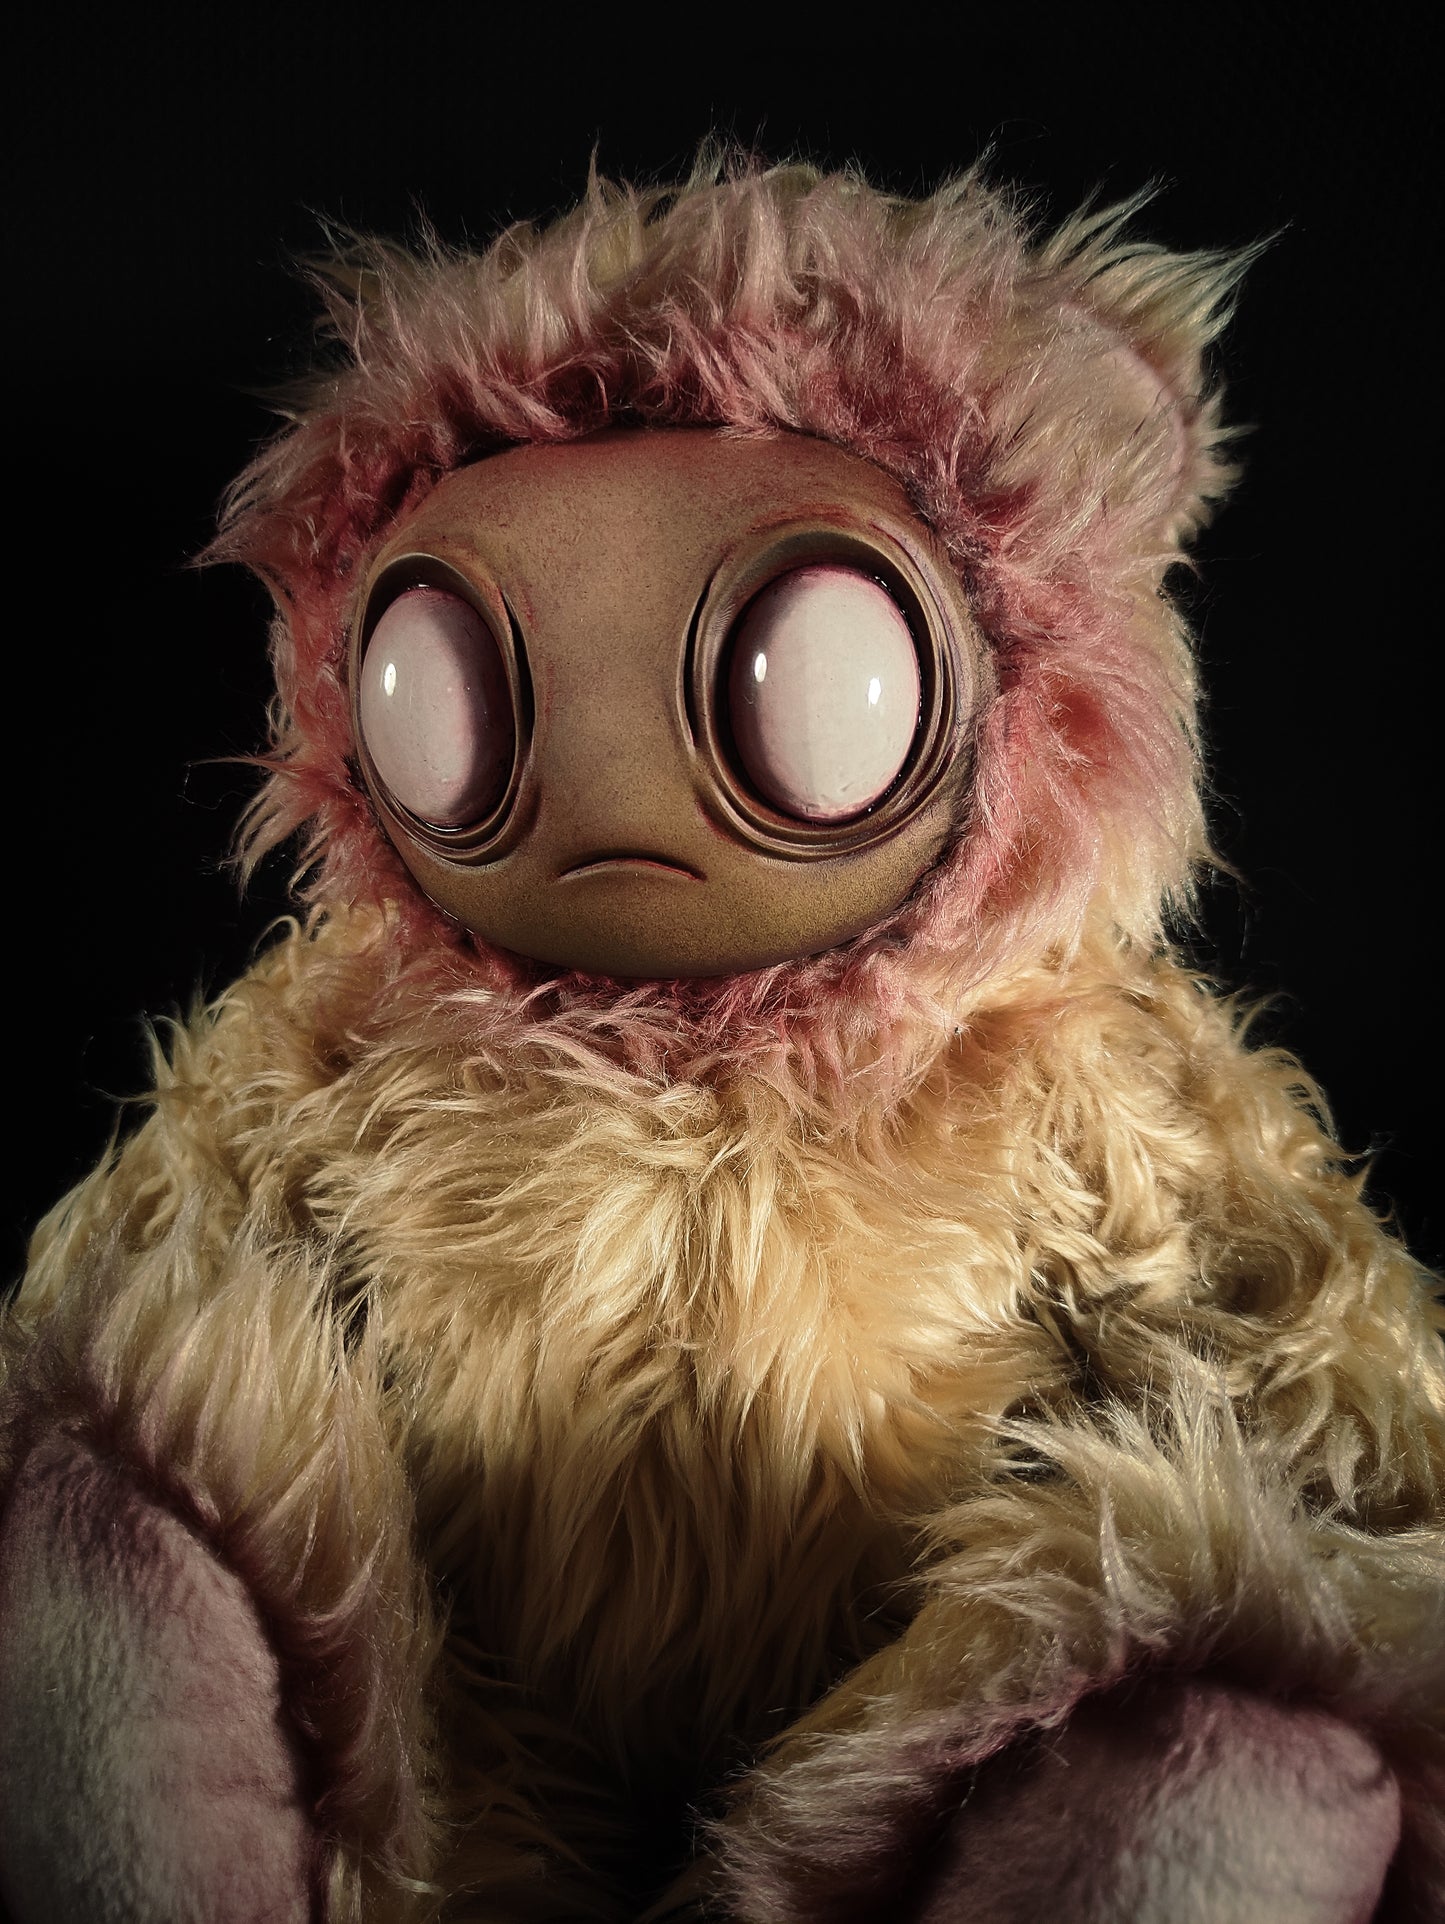 Meeporo (Bleeding Floof Ver.) - Monster Art Doll Plush Toy